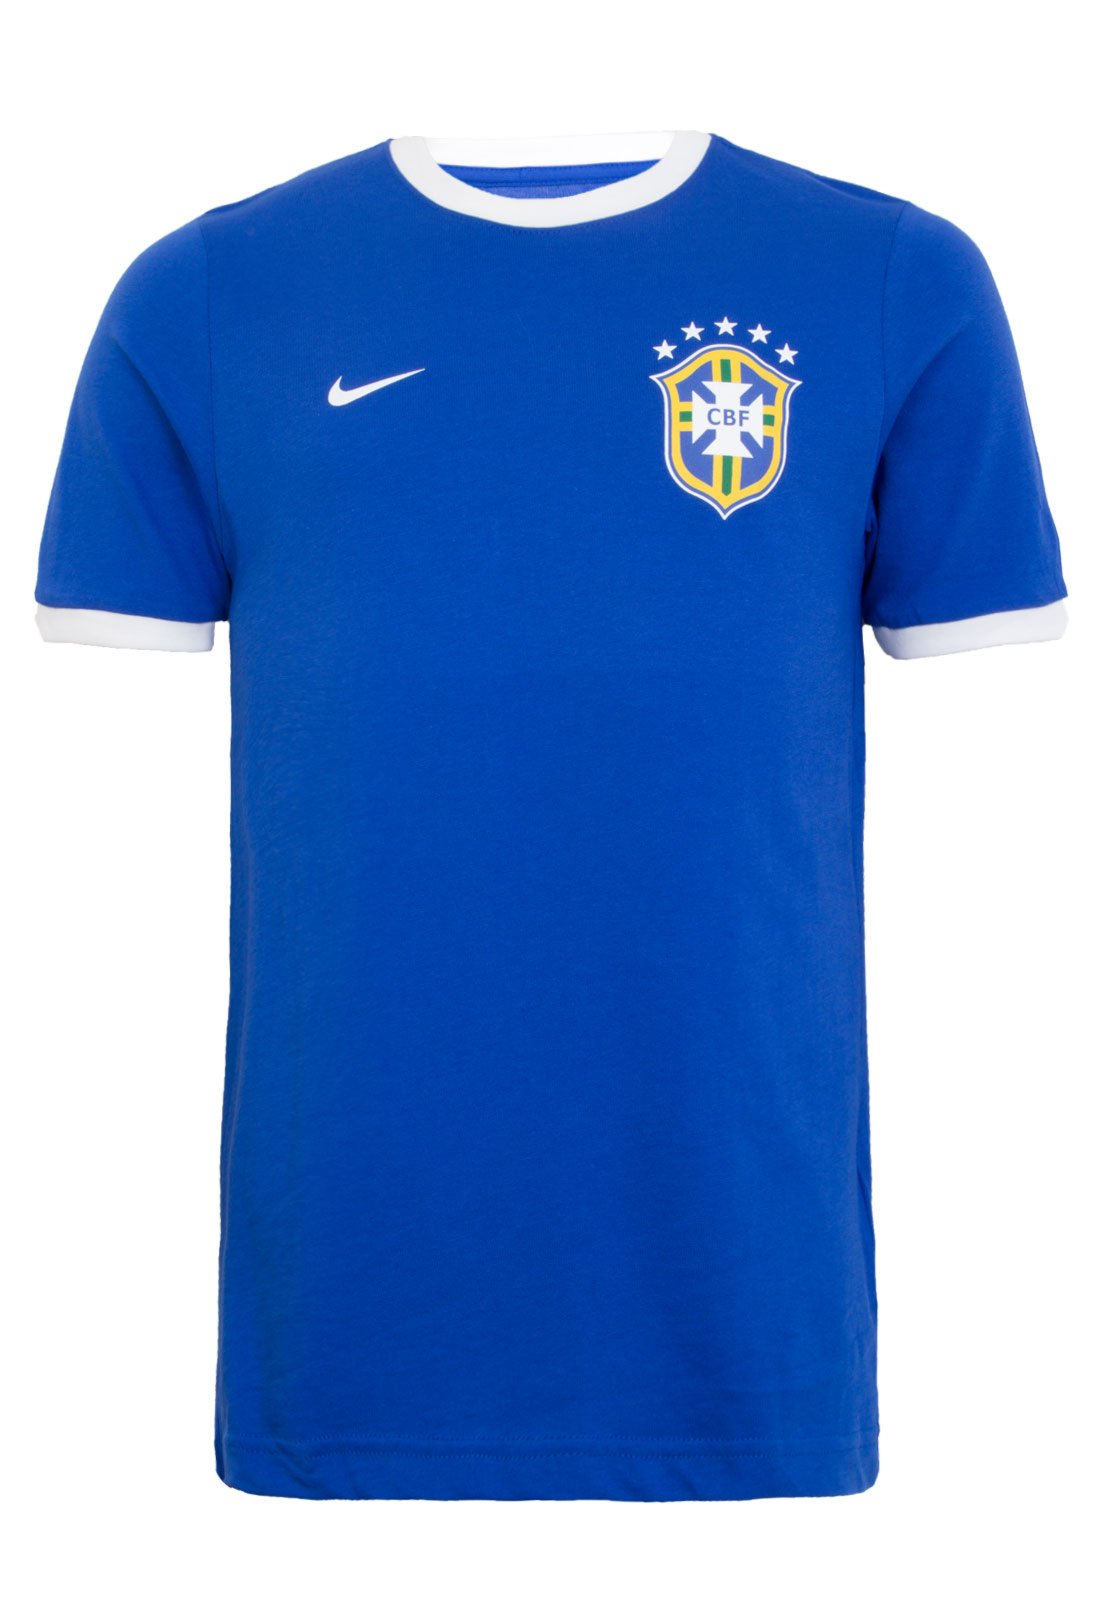 Camisas e camisetas no Brasil